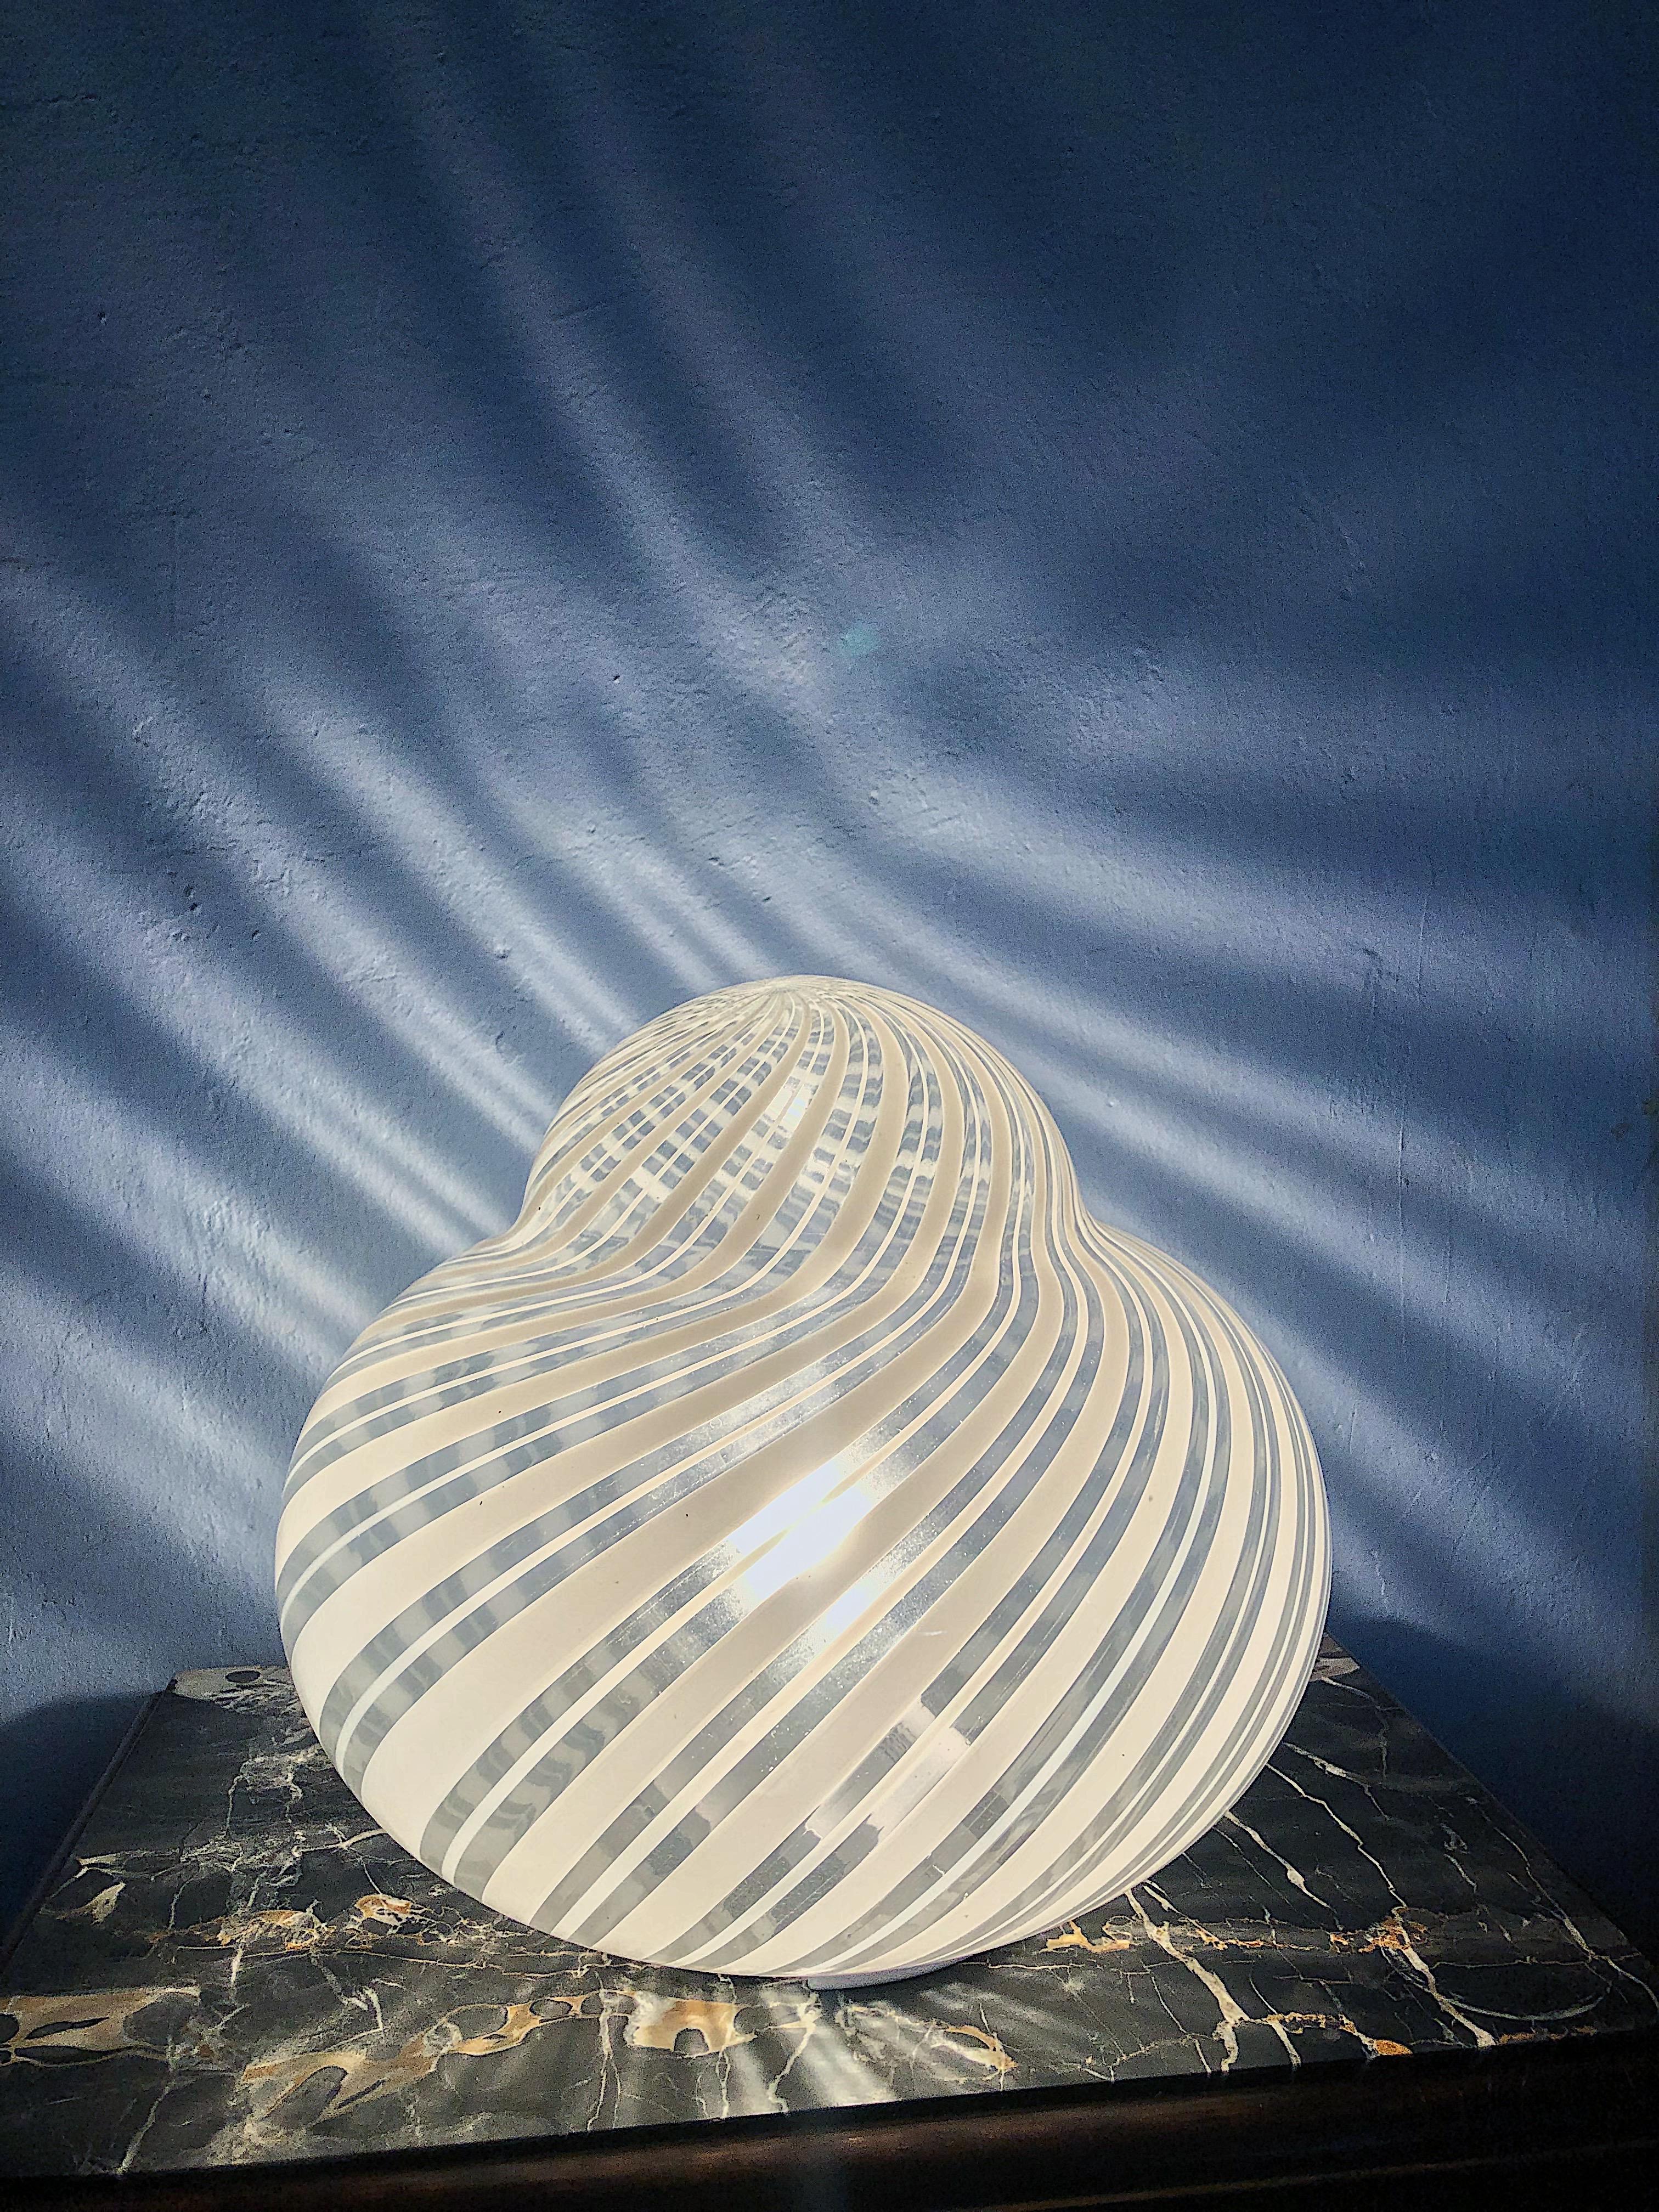 Grande lampe à tourbillon en verre Murano blanc. Convient pour la table ou comme lampadaire.
Créateur : F.FABBIAN Murano

Dimensions : Hauteur : 30 cm Diamètre : 33 cm
Matériaux et techniques : Métal, verre
Lieu d'origine : Italie
Période :